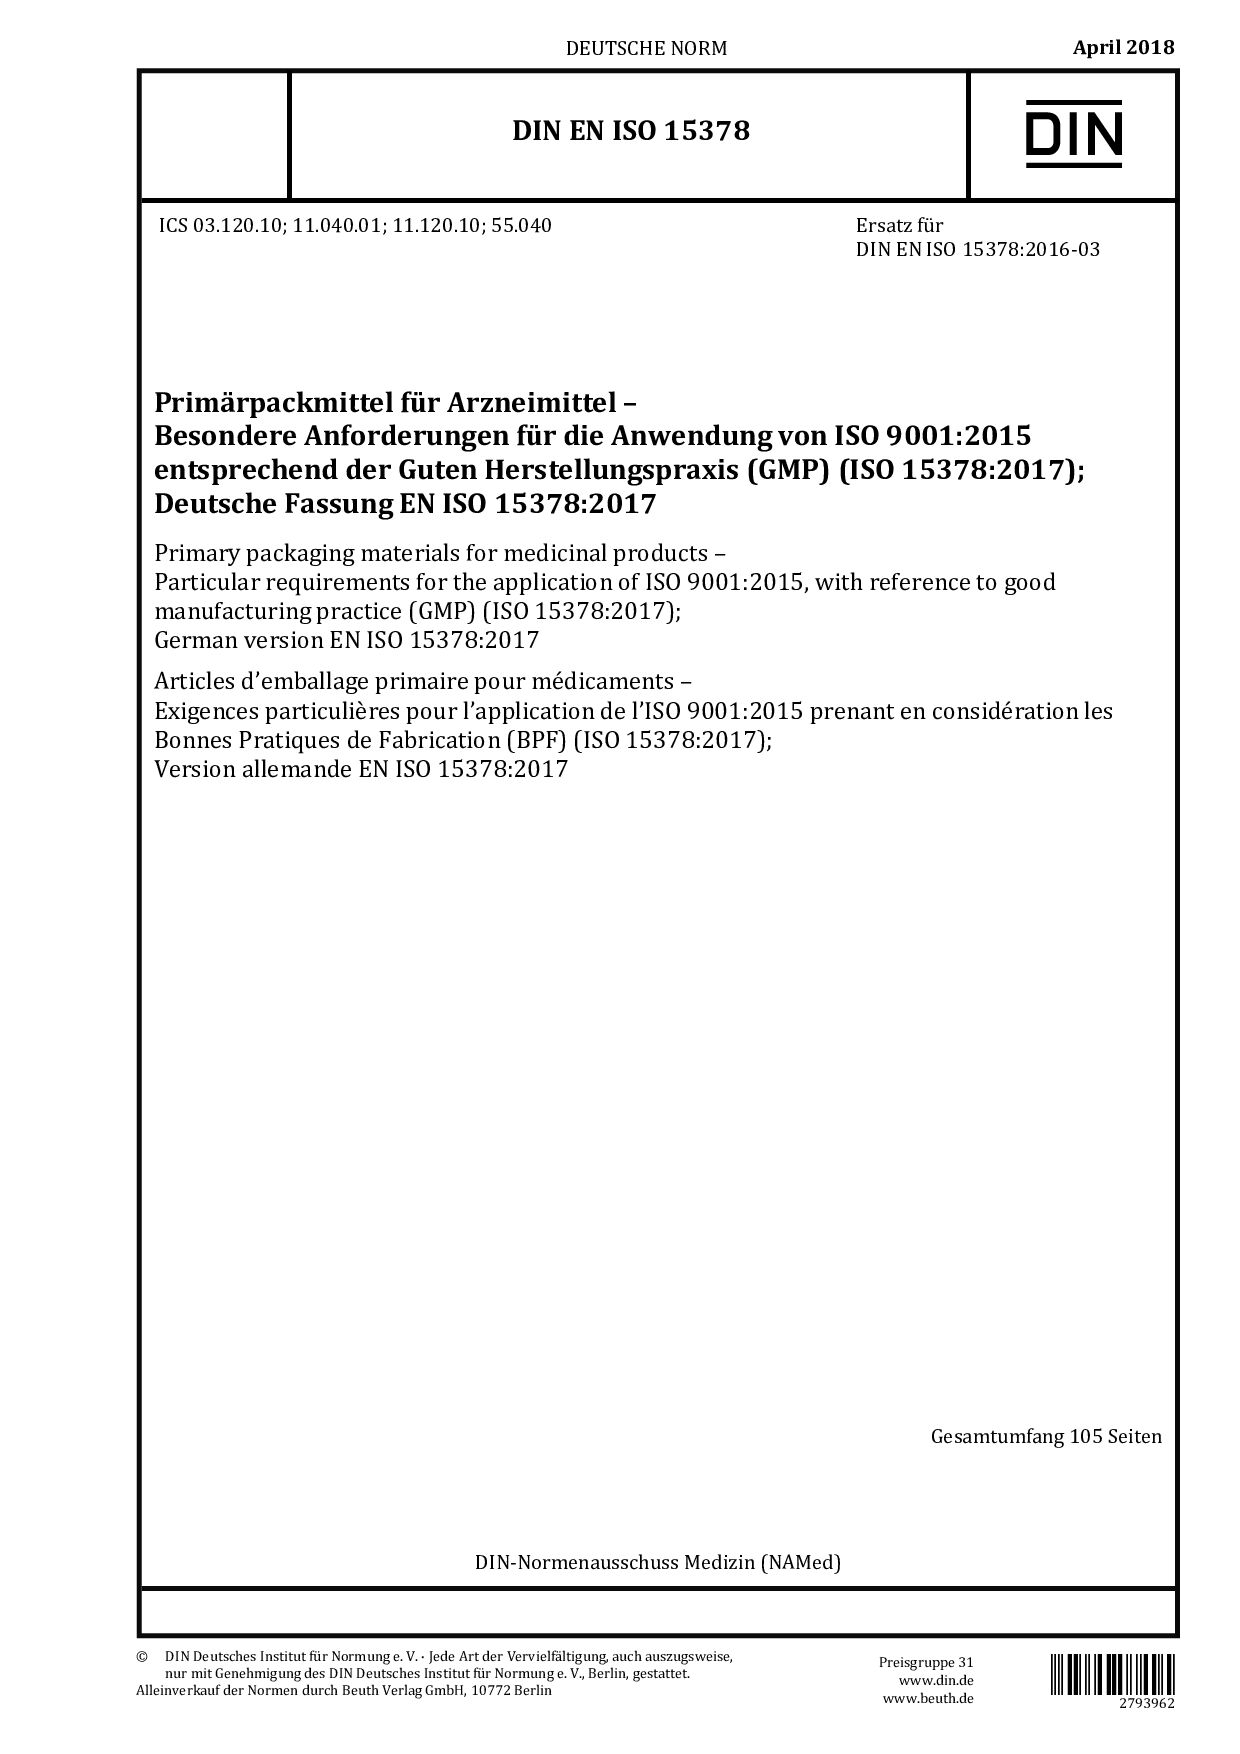 DIN EN ISO 15378:2018封面图